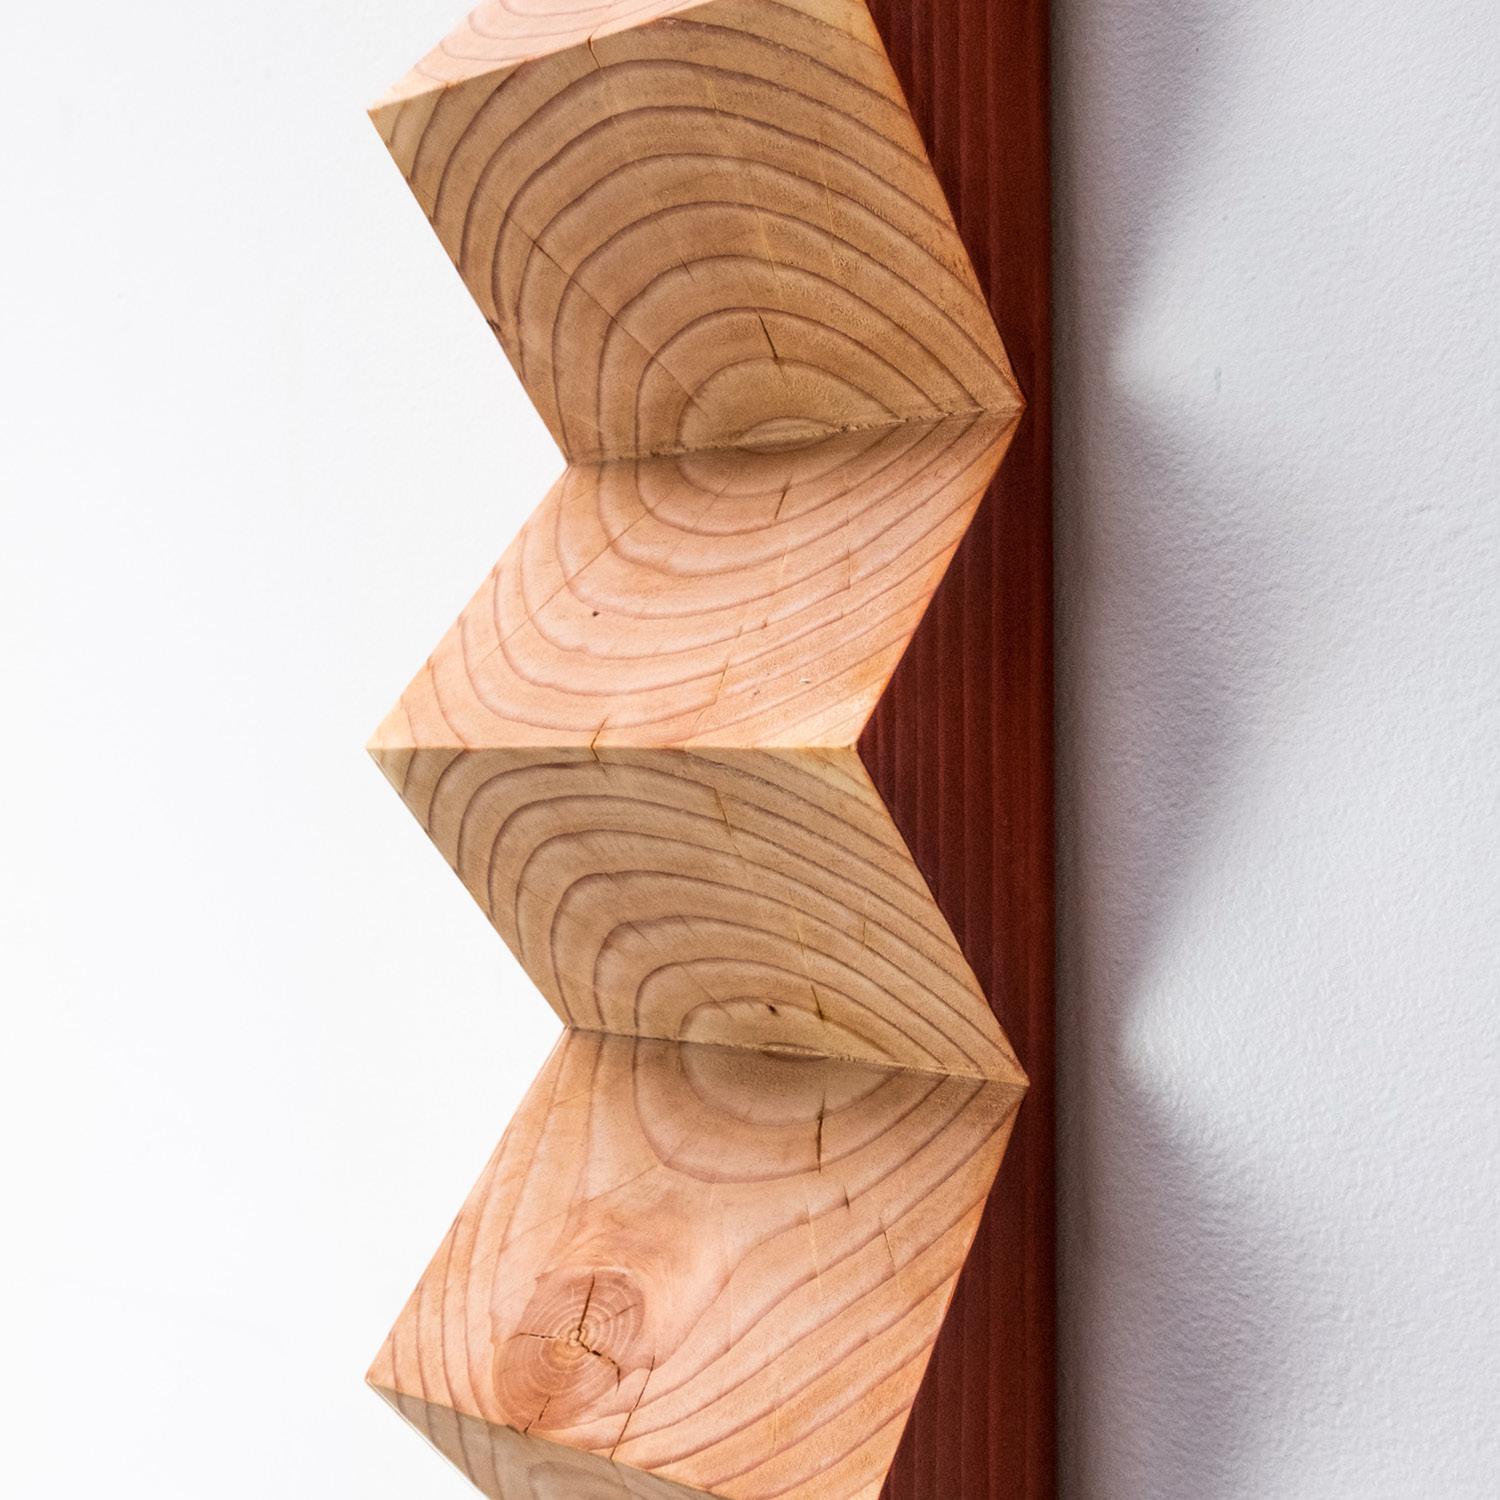 American Waveform Carved Zig Zag Sculpture by Bradley Duncan Studio For Sale